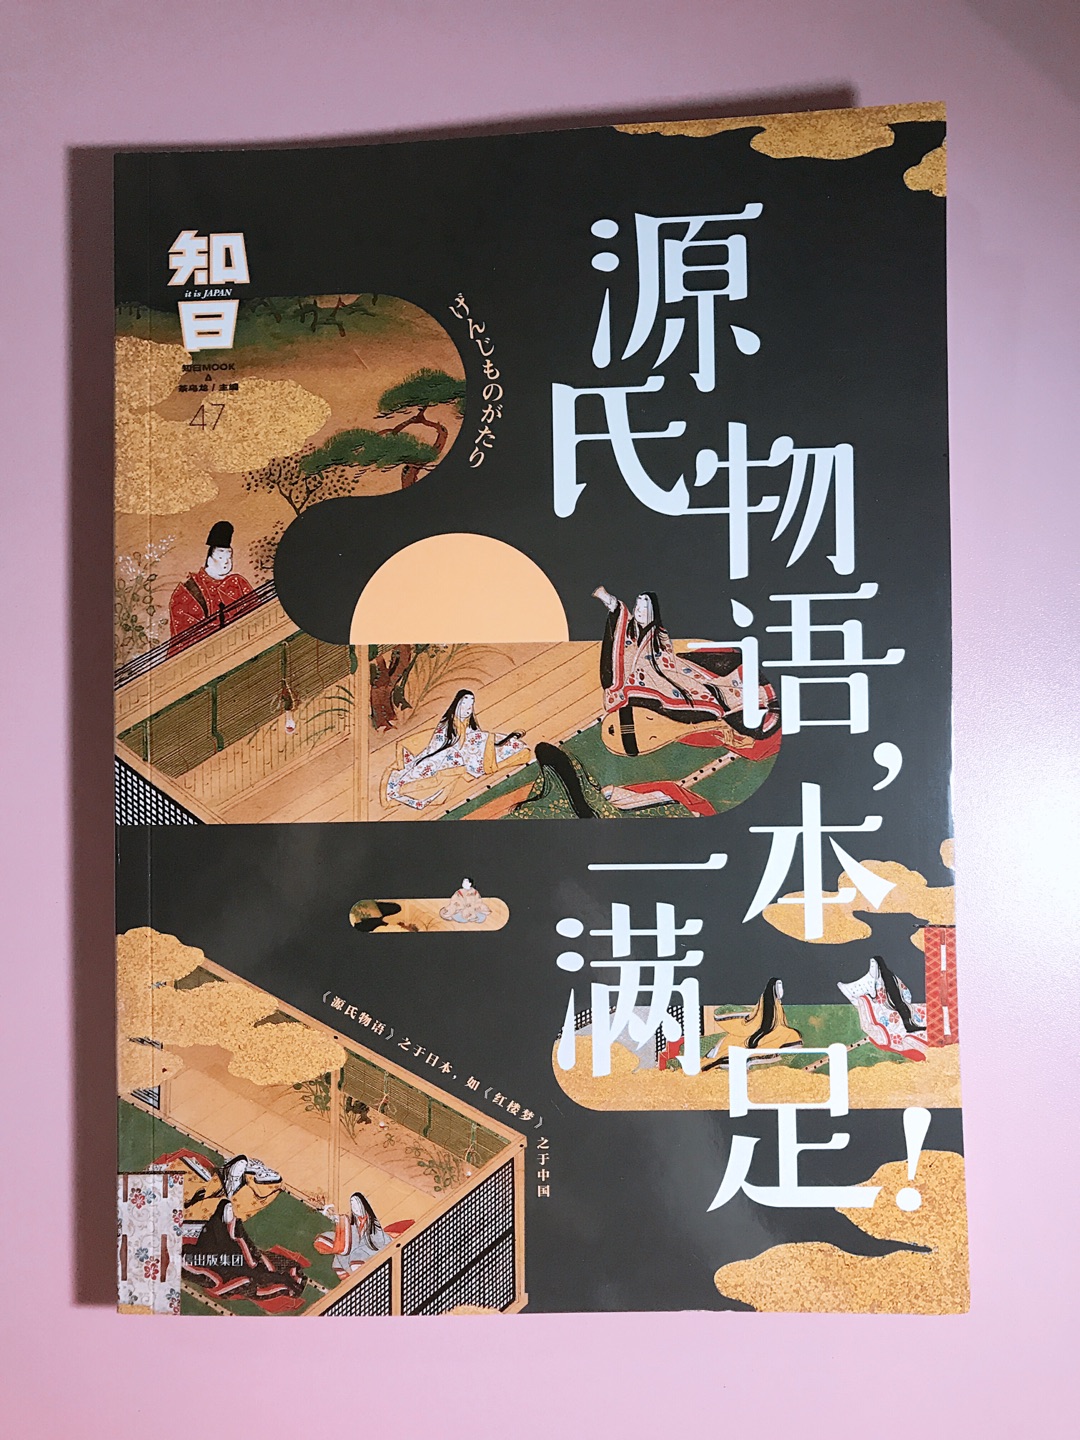 喜欢知中知日的书，这本源氏物语是日本版红楼梦，看封面就很吸引人，物流很快，喜欢在买书。